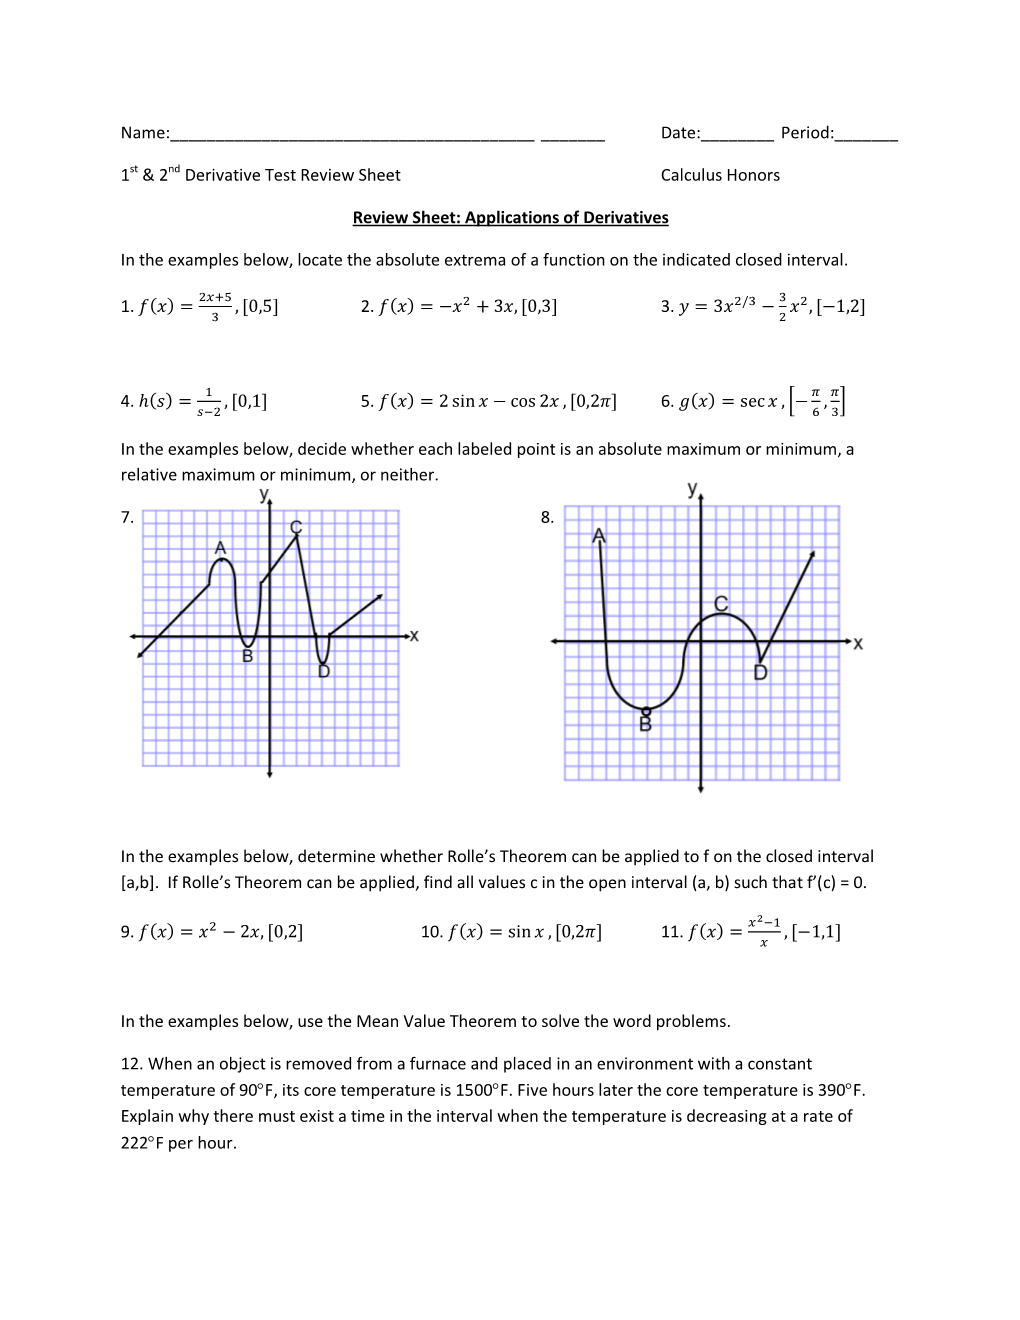 1St & 2Nd Derivative Test Review Sheet C